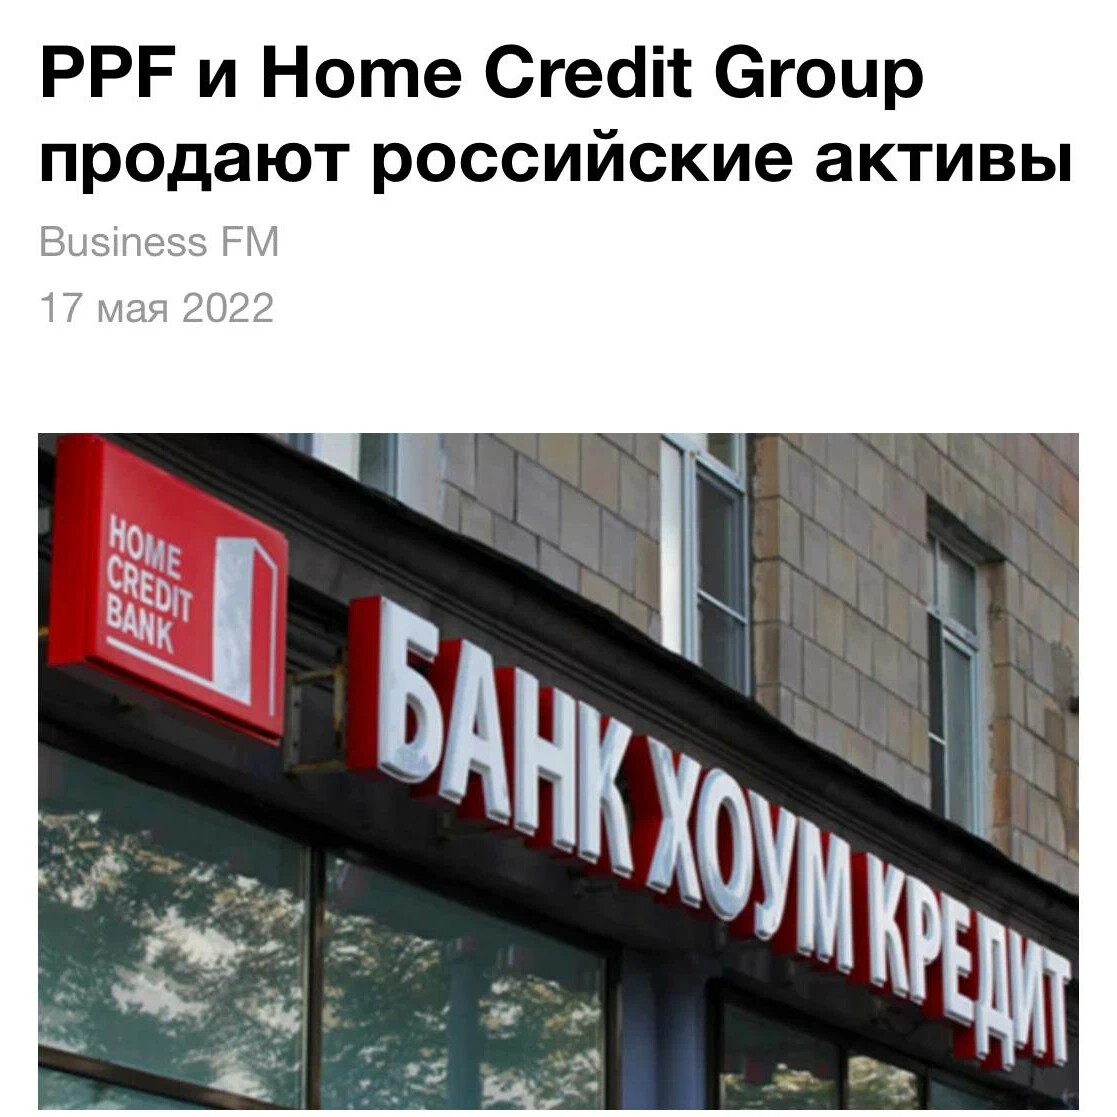 Социальный кредитный банк. Home credit Bank Гарик Варламов Свобода.